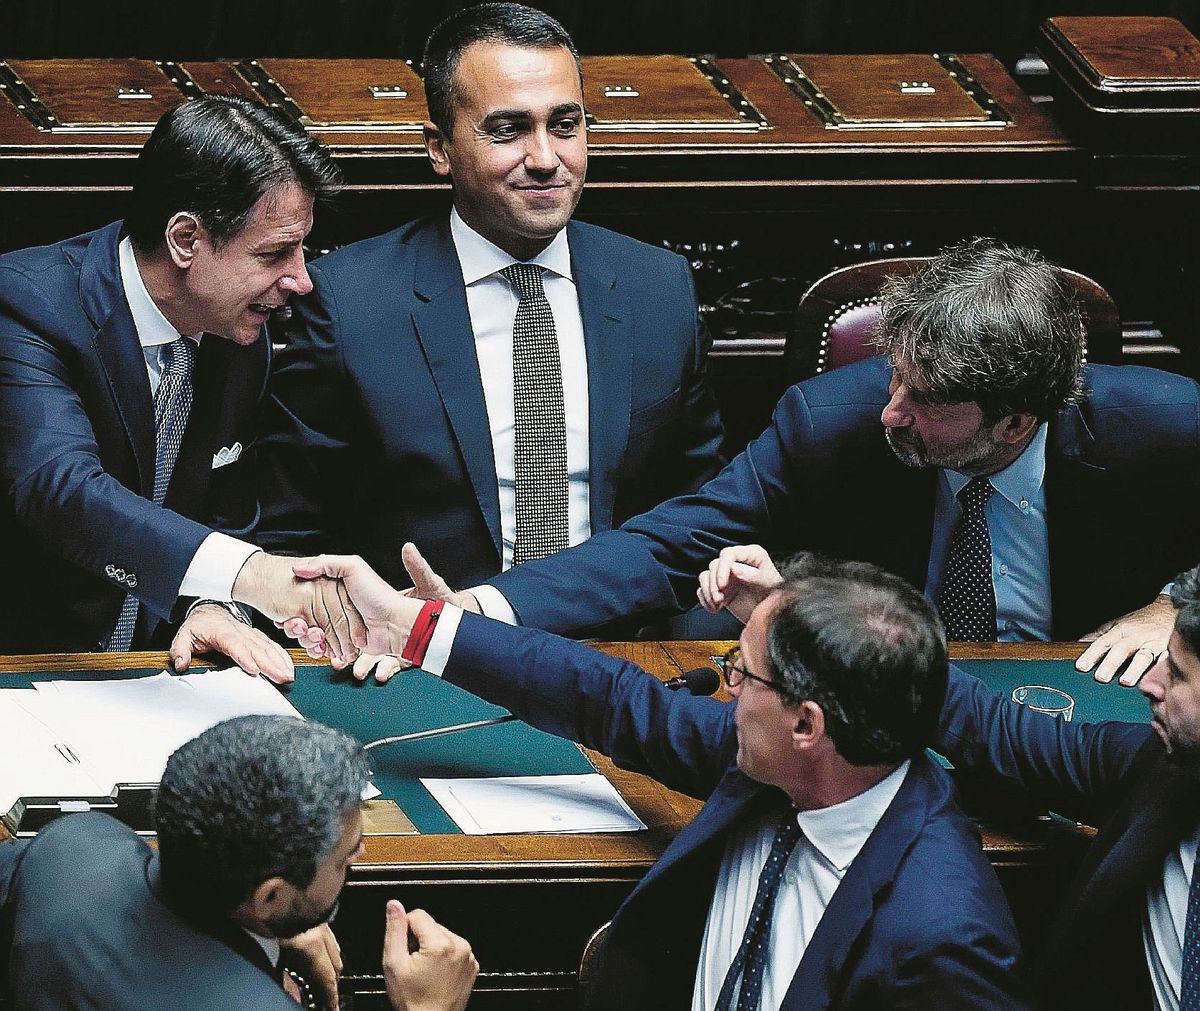 Un Conte senza argomenti si aggrappa agli insulti: «Salvini voleva più poltrone»